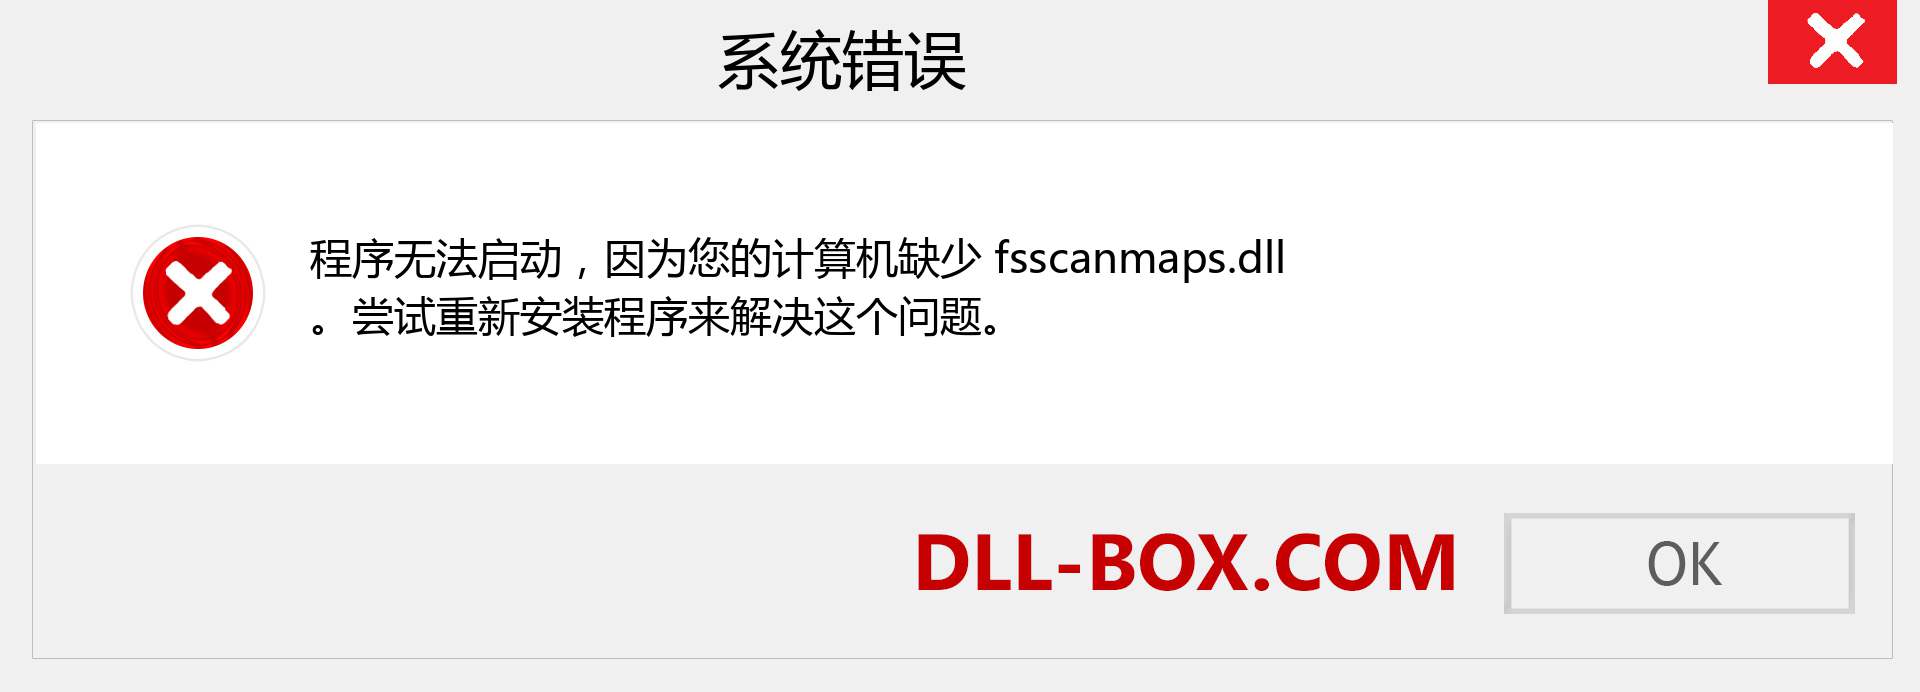 fsscanmaps.dll 文件丢失？。 适用于 Windows 7、8、10 的下载 - 修复 Windows、照片、图像上的 fsscanmaps dll 丢失错误